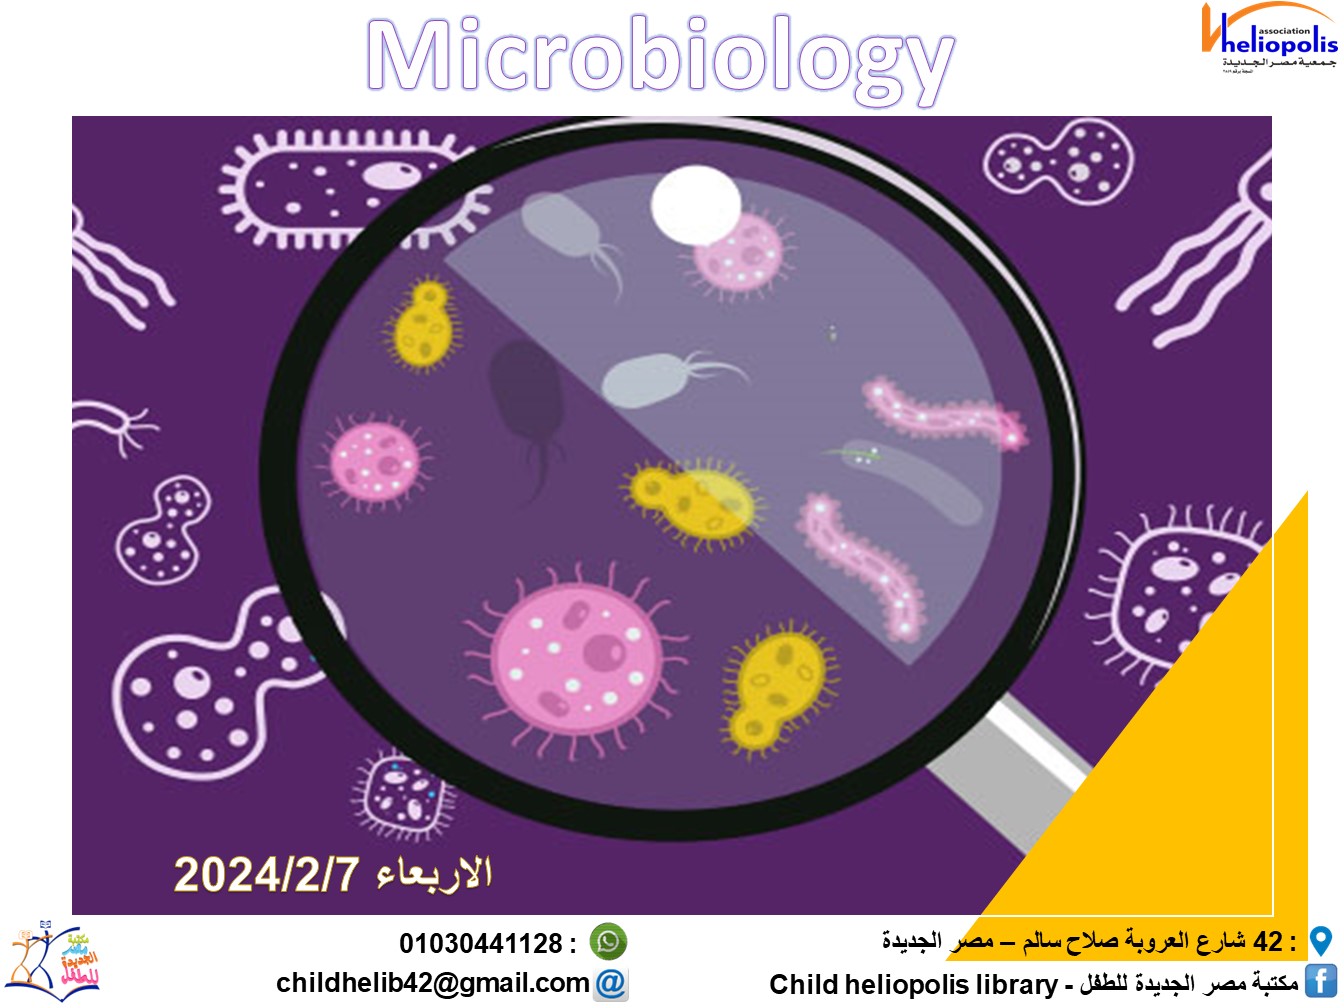 ورشة الماكروبيولوجى ورشة علمية عن مكونات الخلية والبكتريا تحت الميكروسكوب<br/>